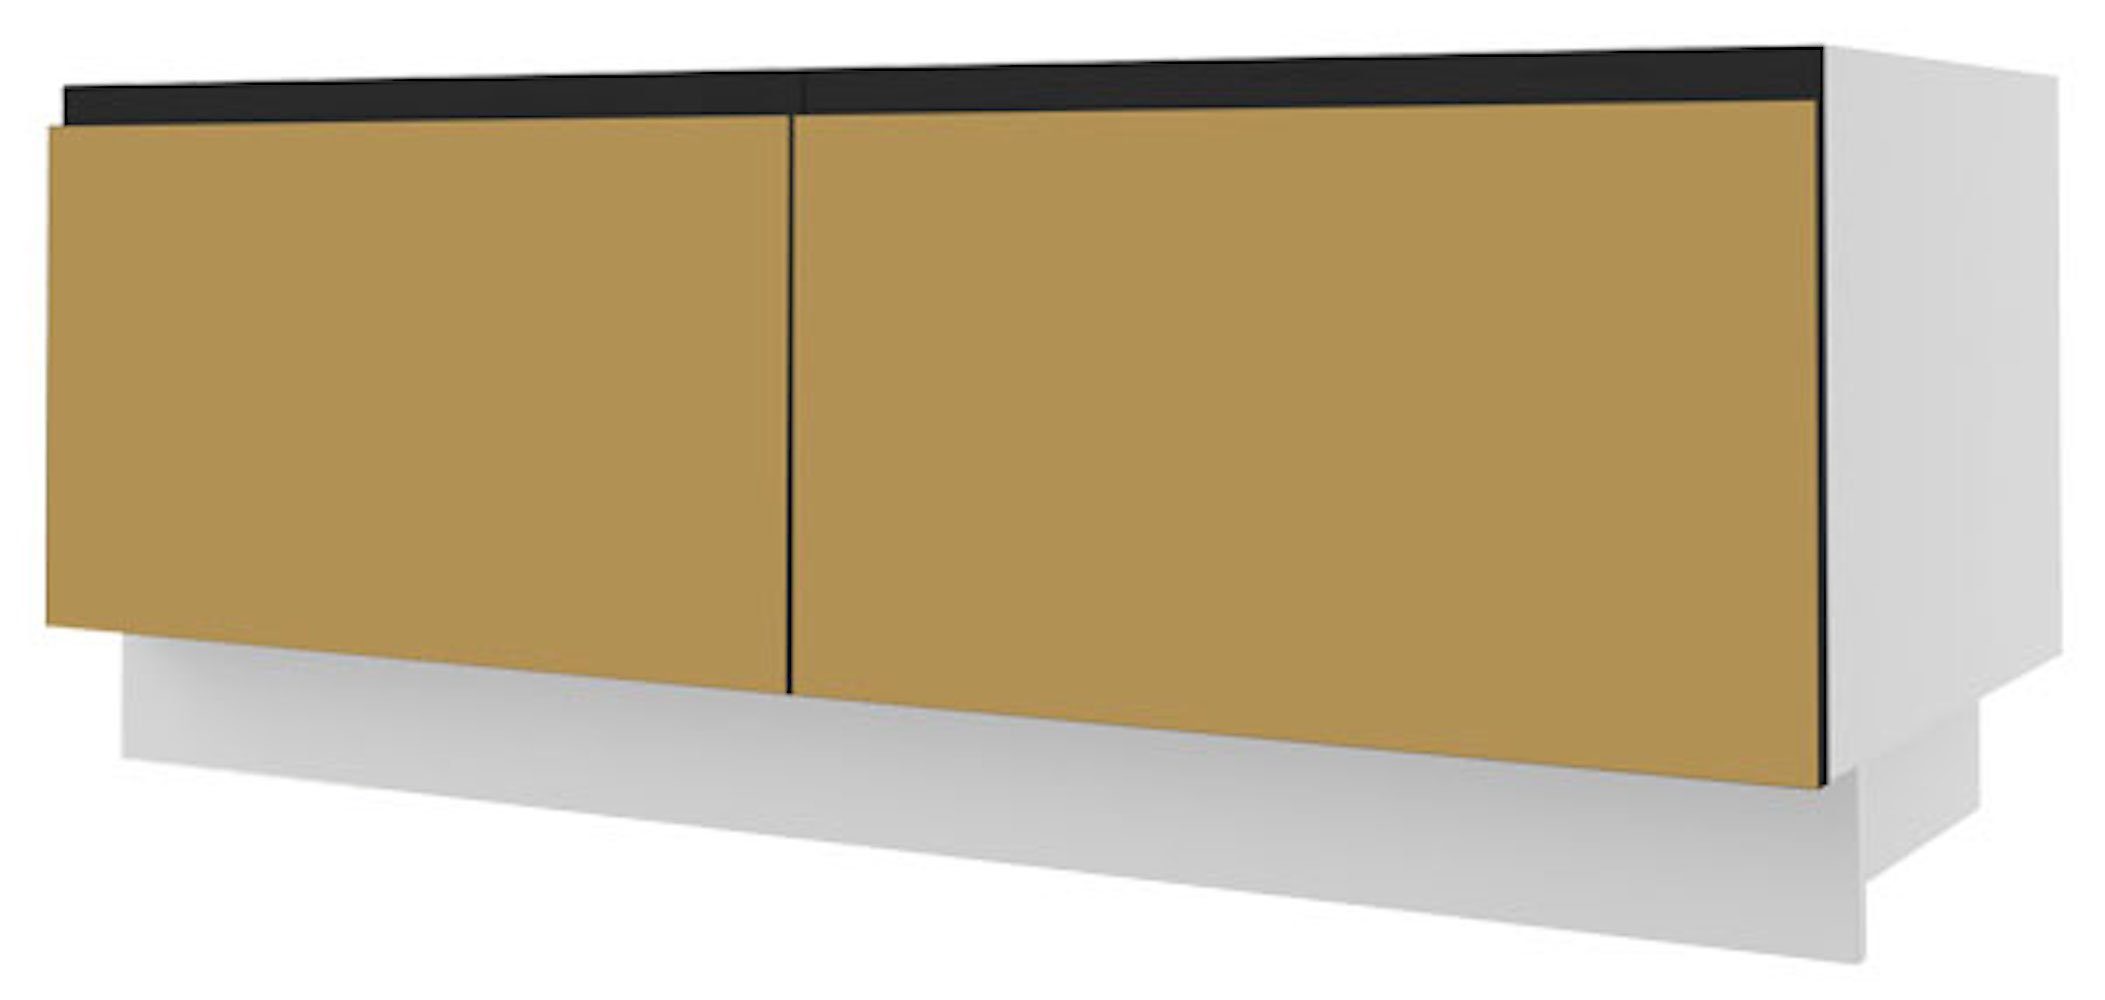 Velden 2 120cm Korpusfarbe (Vollauszug) Schubladen & Front- grifflos Unterschrank wählbar Feldmann-Wohnen gold super matt